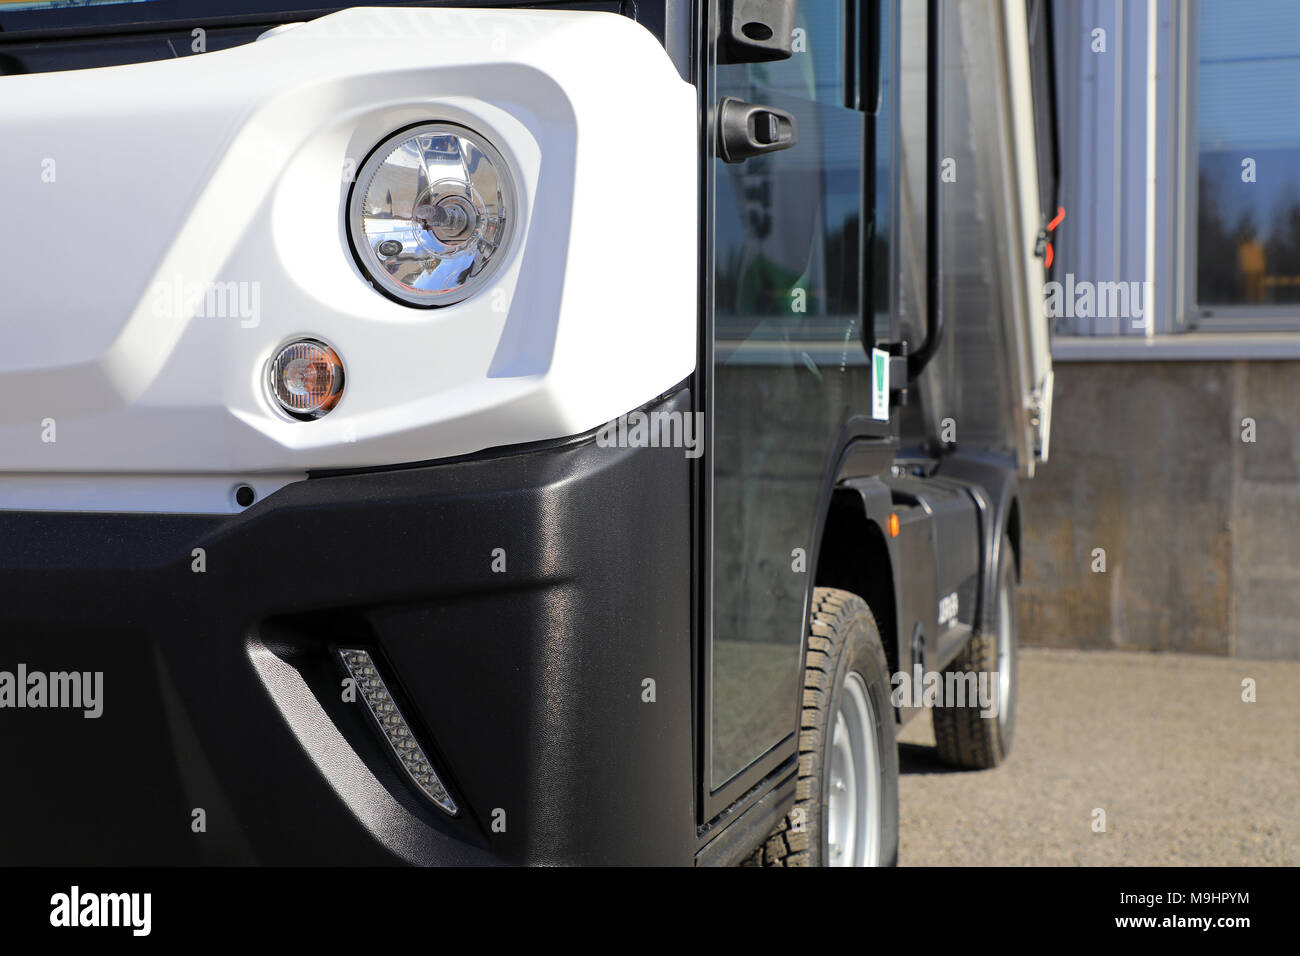 LIETO, Finnland - 24. MÄRZ 2018: Scheinwerfer Detail der Goupil G4 electric utility Fahrzeug bei der jährlichen öffentlichen Veranstaltung der Zotten Konekaupan Lansi Mach gesehen Stockfoto